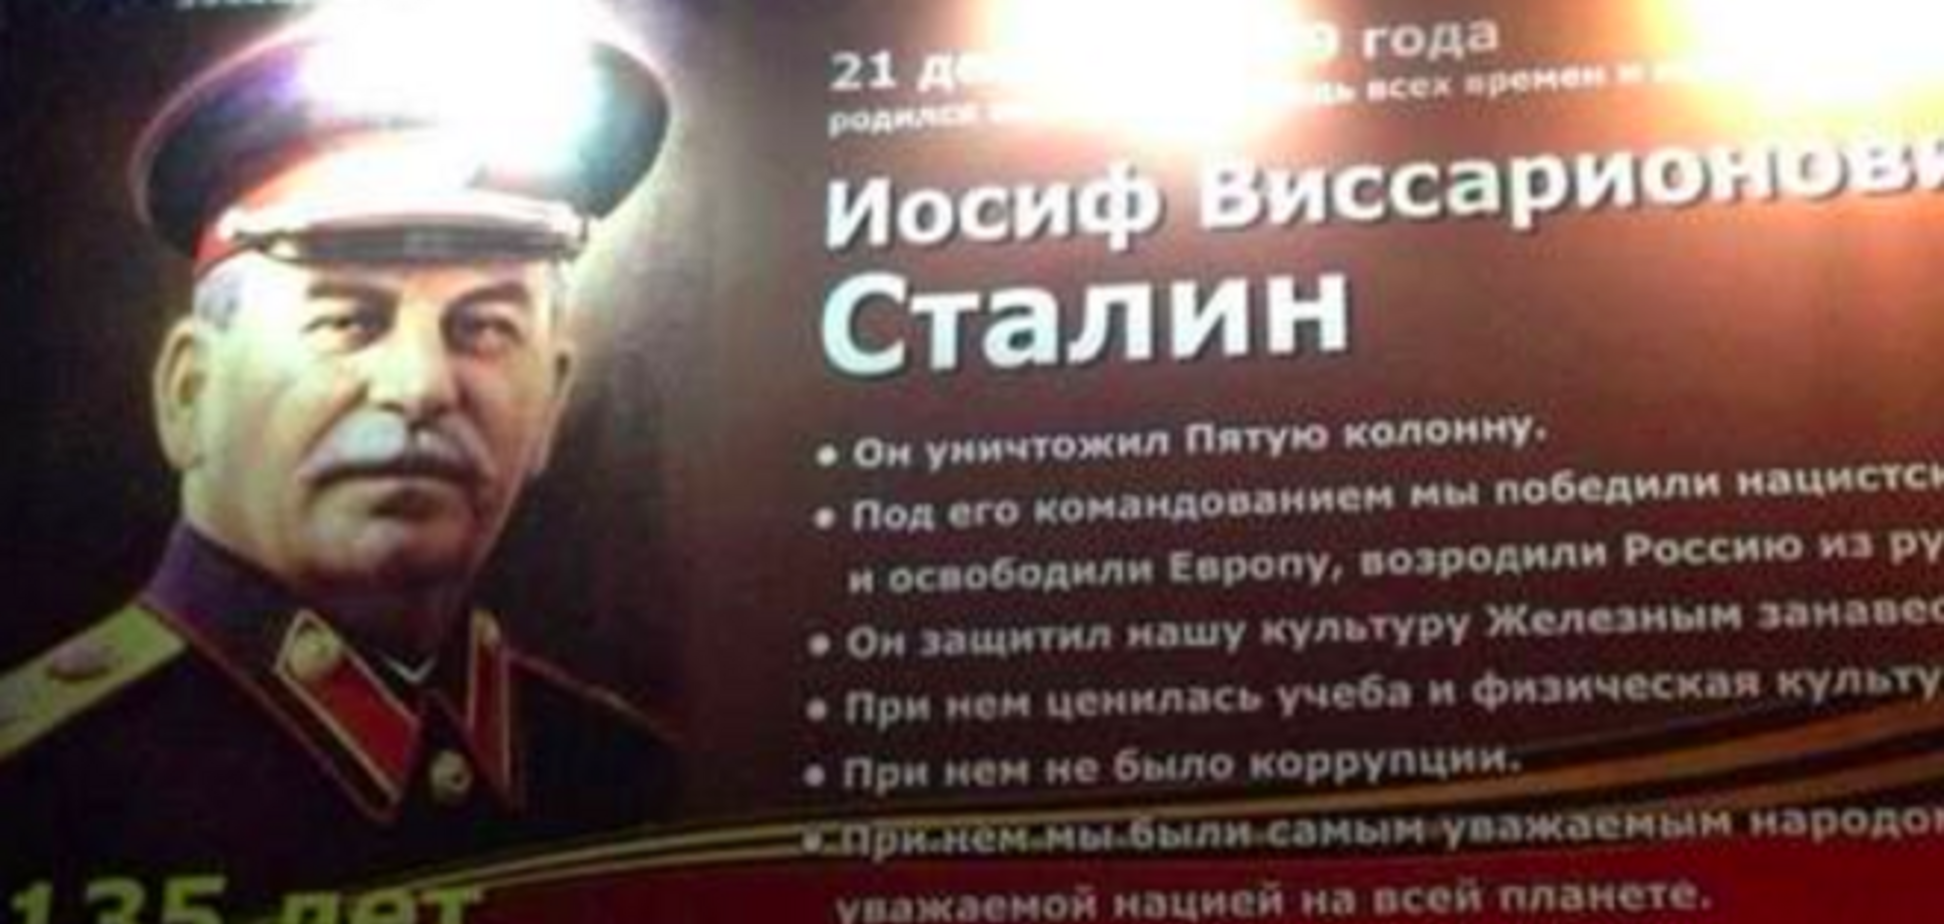 Ляшко установил в российском городе билборд о достижениях Сталина